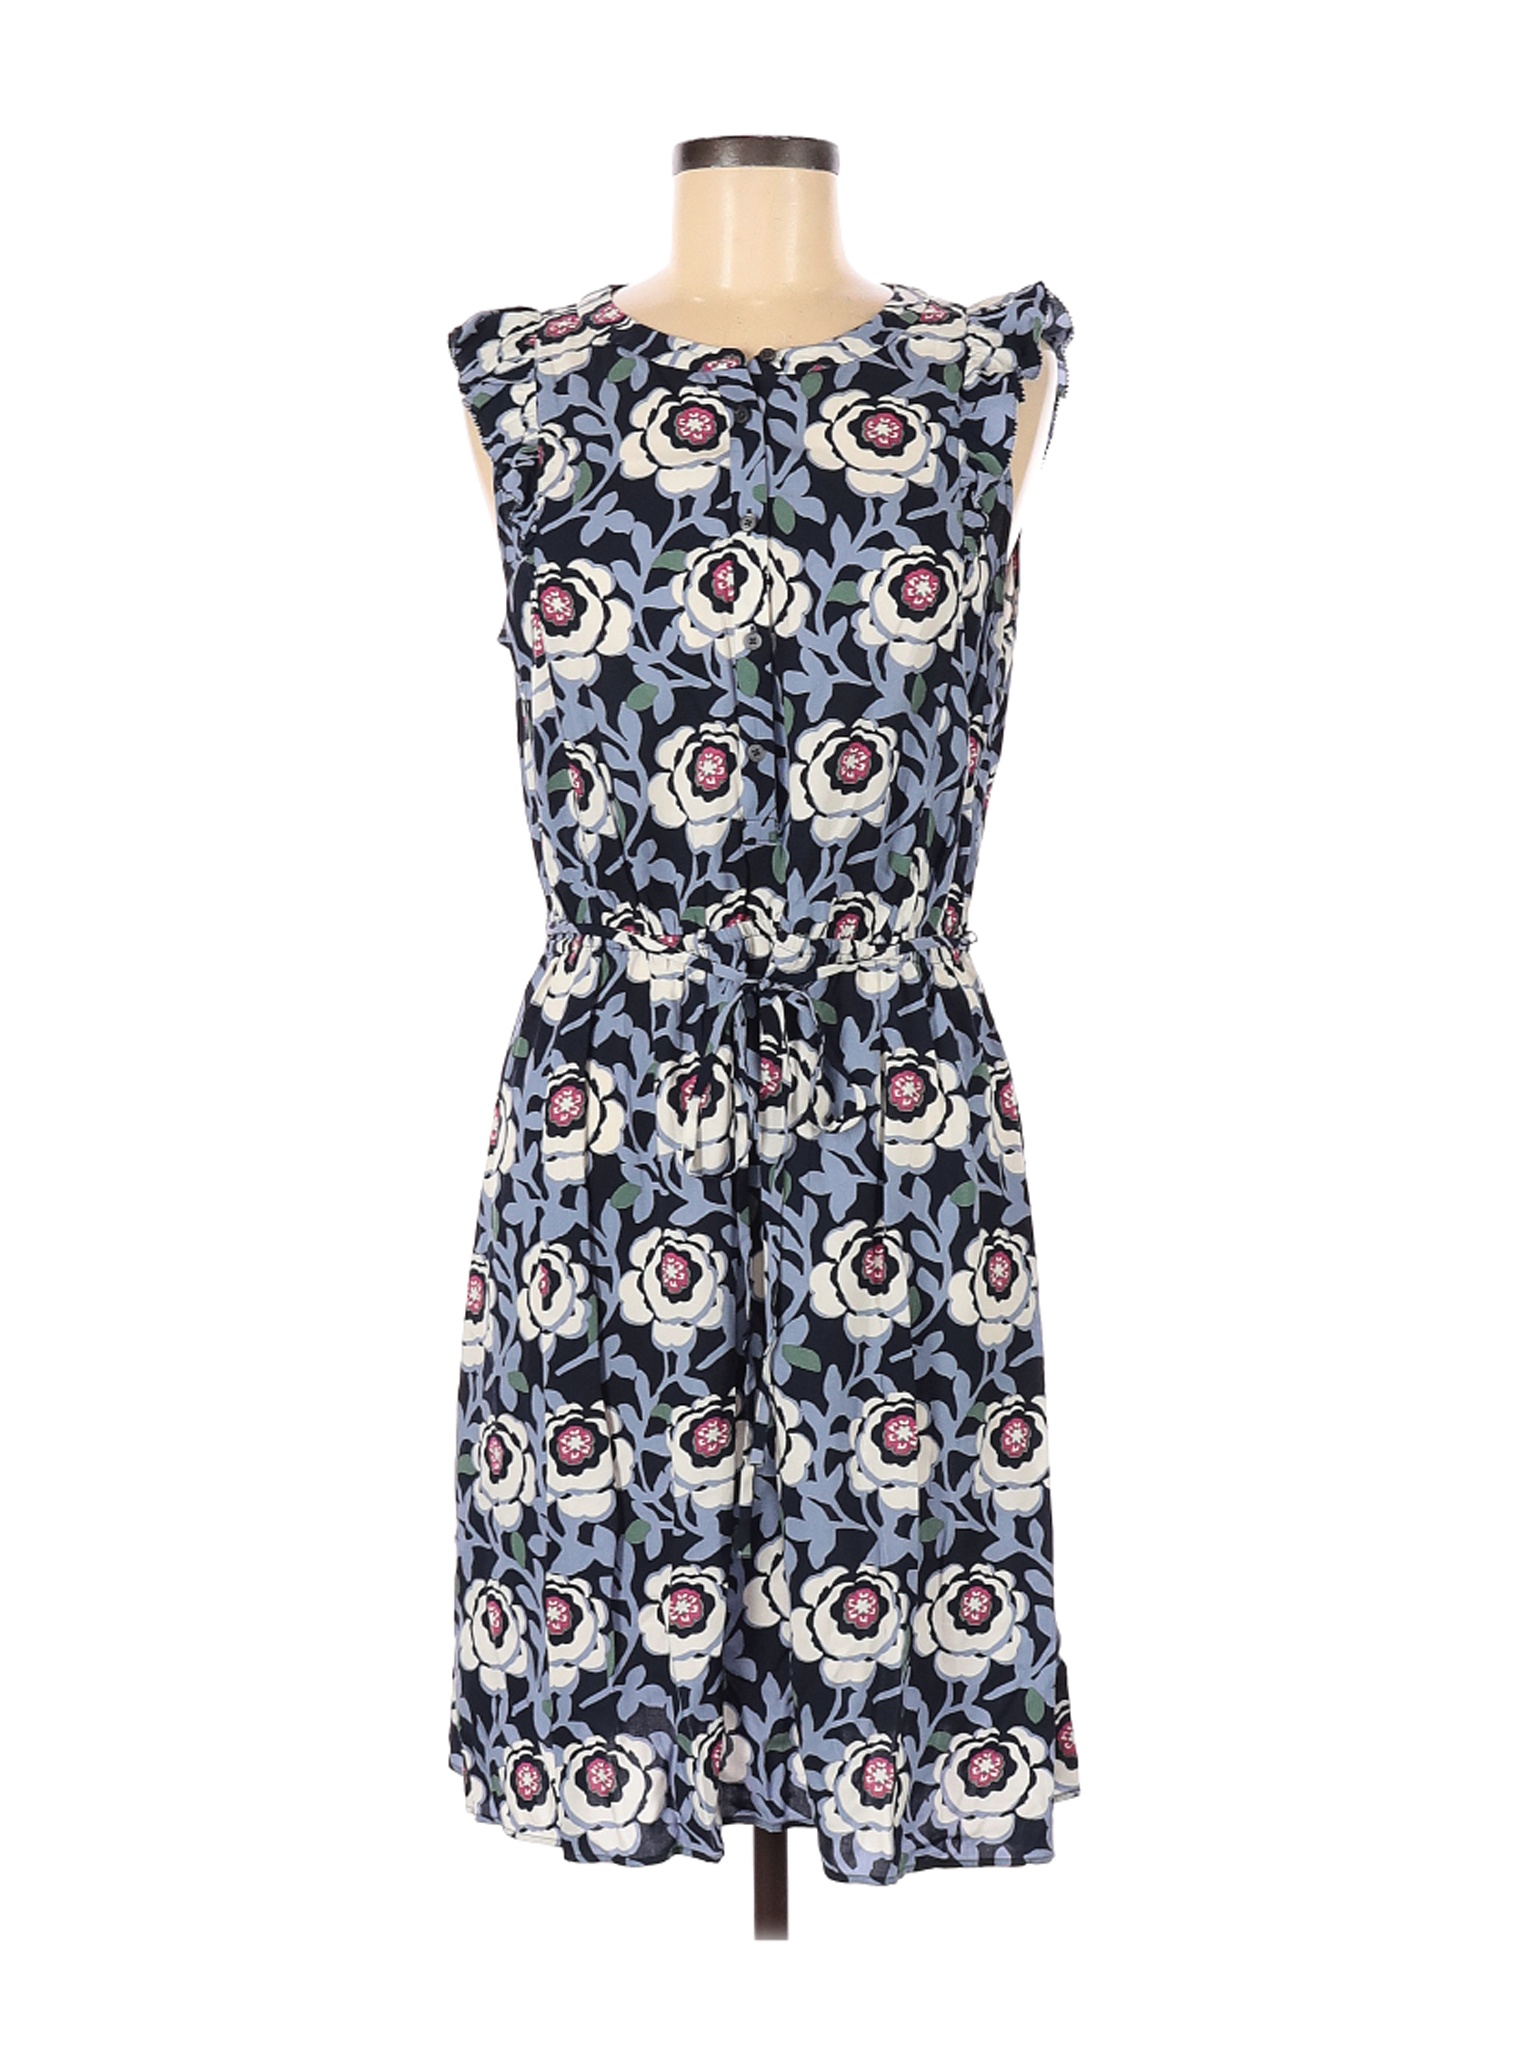 Ann Taylor LOFT Women Blue Casual Dress M | eBay